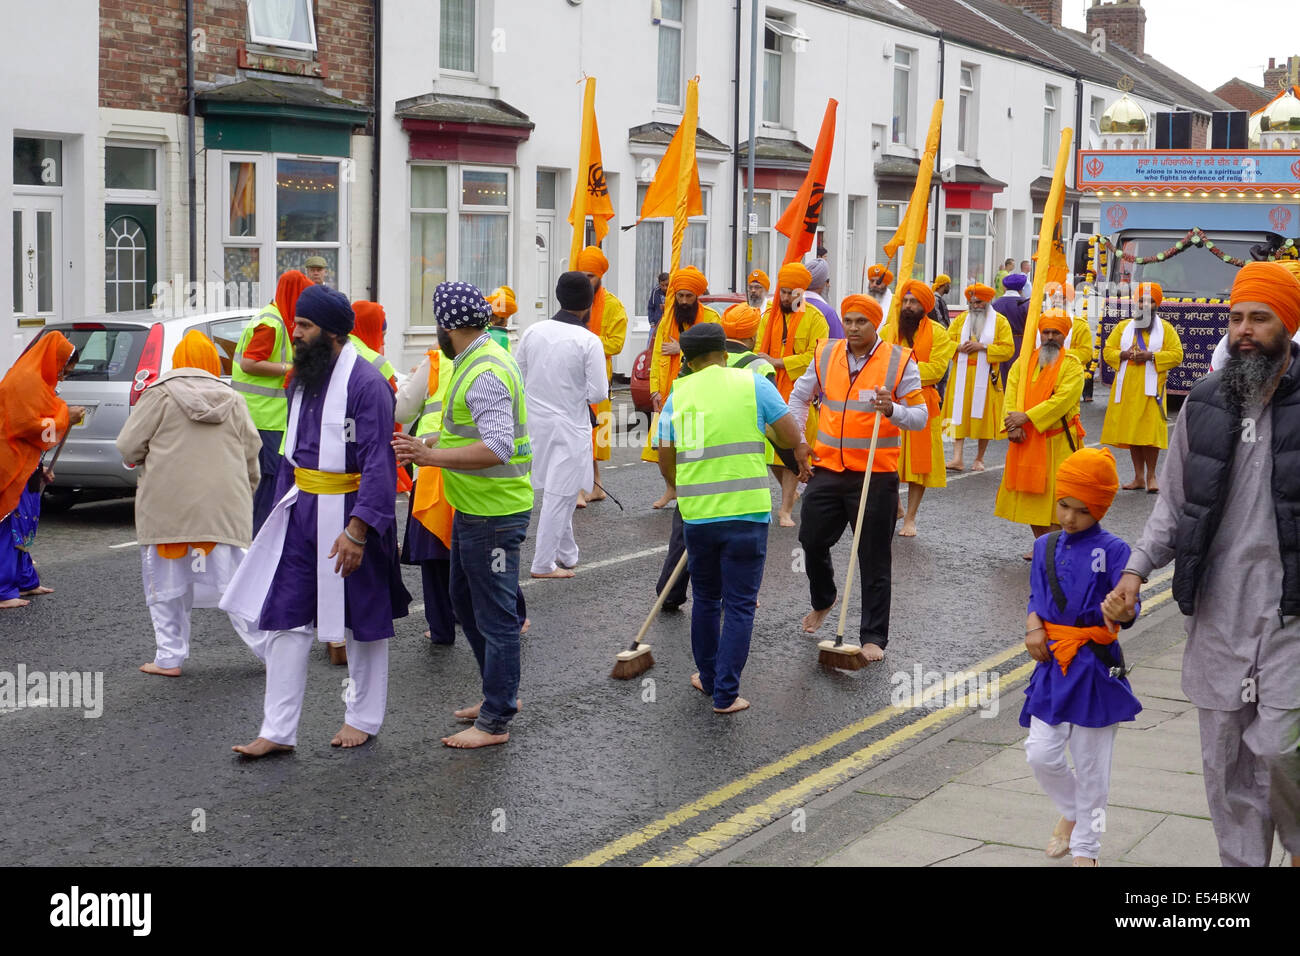 Middlesbrough, Regno Unito. Il 20 luglio, 2014. L annuale Nagar Kirtan Parade celebra la cultura Sikh nel nord-est dell' Inghilterra ha avuto luogo in Middlesbrough Cleveland UK oggi è domenica 20 luglio. Il corteo è guidato da cinque zafferano derubato gli uomini che portano un galleggiante che porta il Guru Granth Sahib i sikh la Sacra Scrittura. Membri della processione è a piedi nudi in ossequio alla scrittura così visualizzato. Essi sono preceduti da spazzatrici pulizia della strada. Questa immagine mostra il volontario street pulitori di fronte alla sfilata Credito: Pietro Giordano NE/Alamy Live News Foto Stock